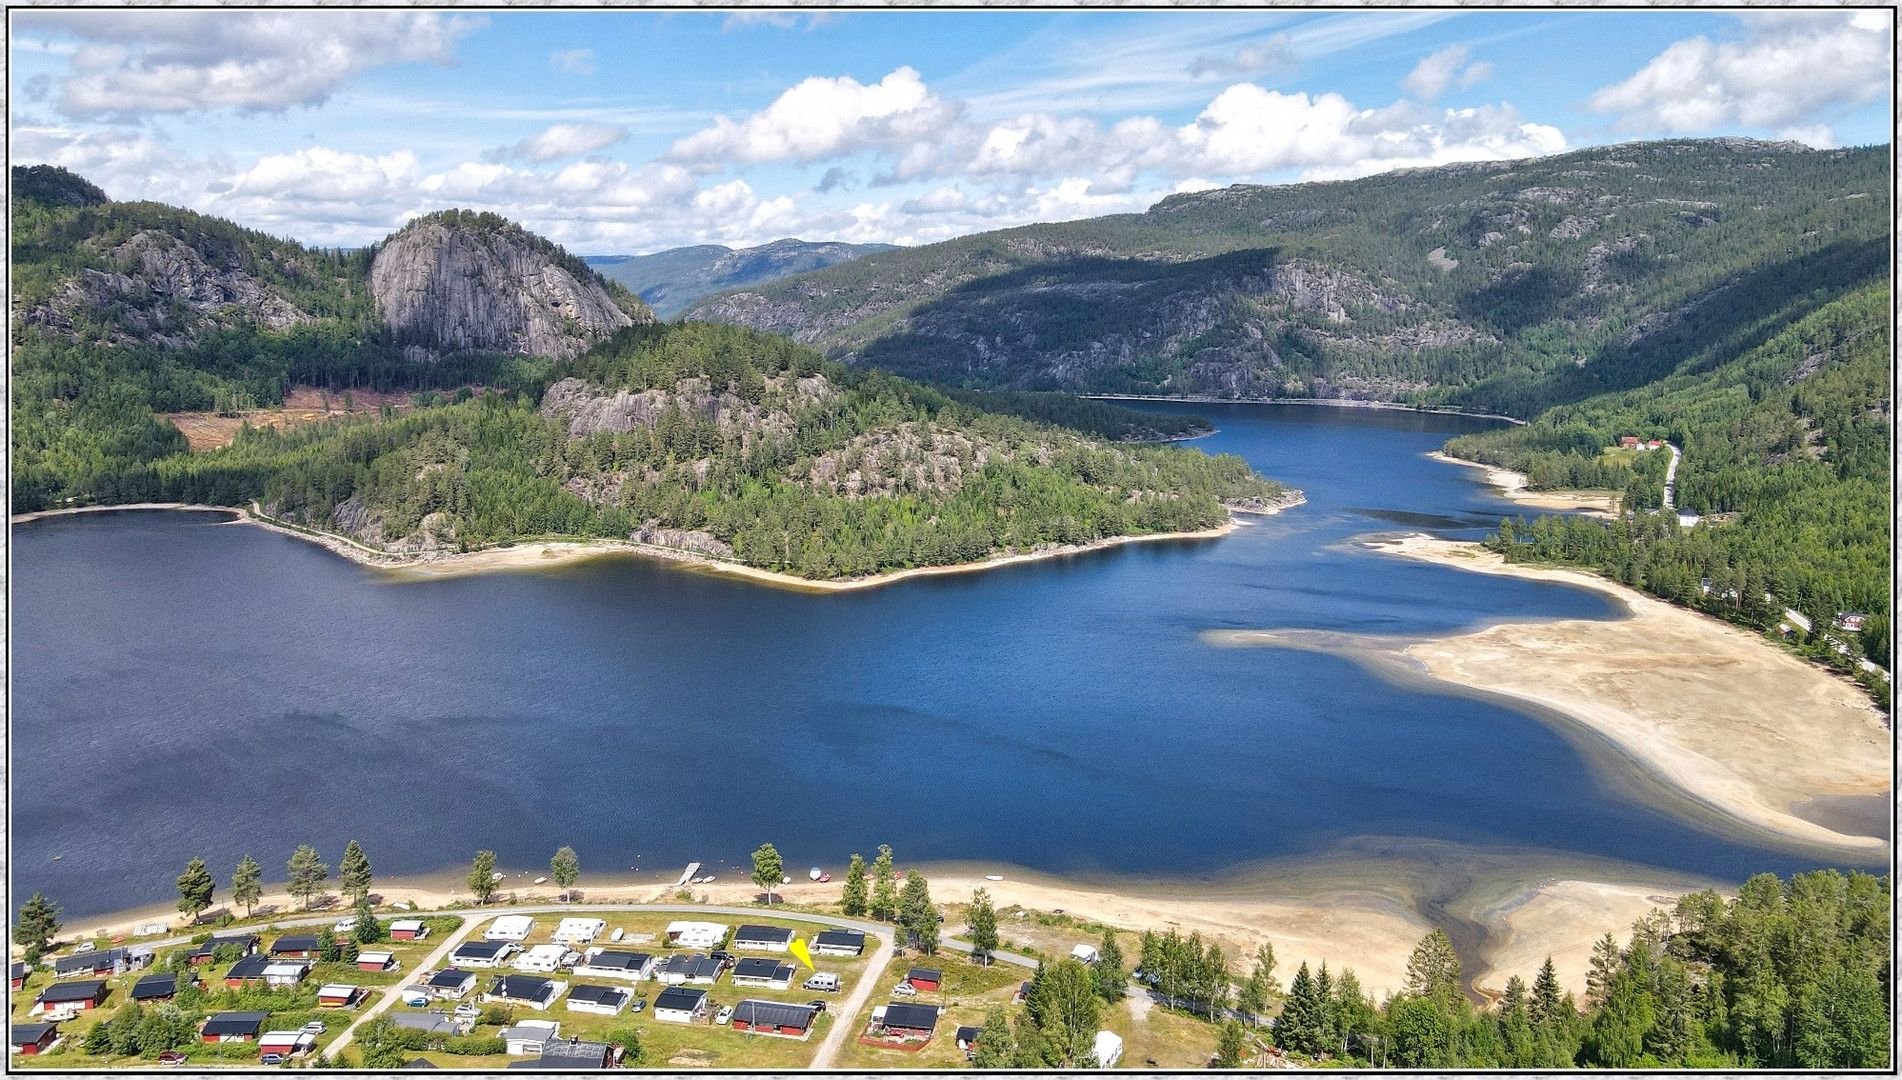  Øyne Camping am südlichen Ende vom See Fyresvat(Telemark): Norwegen Camperreise 2022 